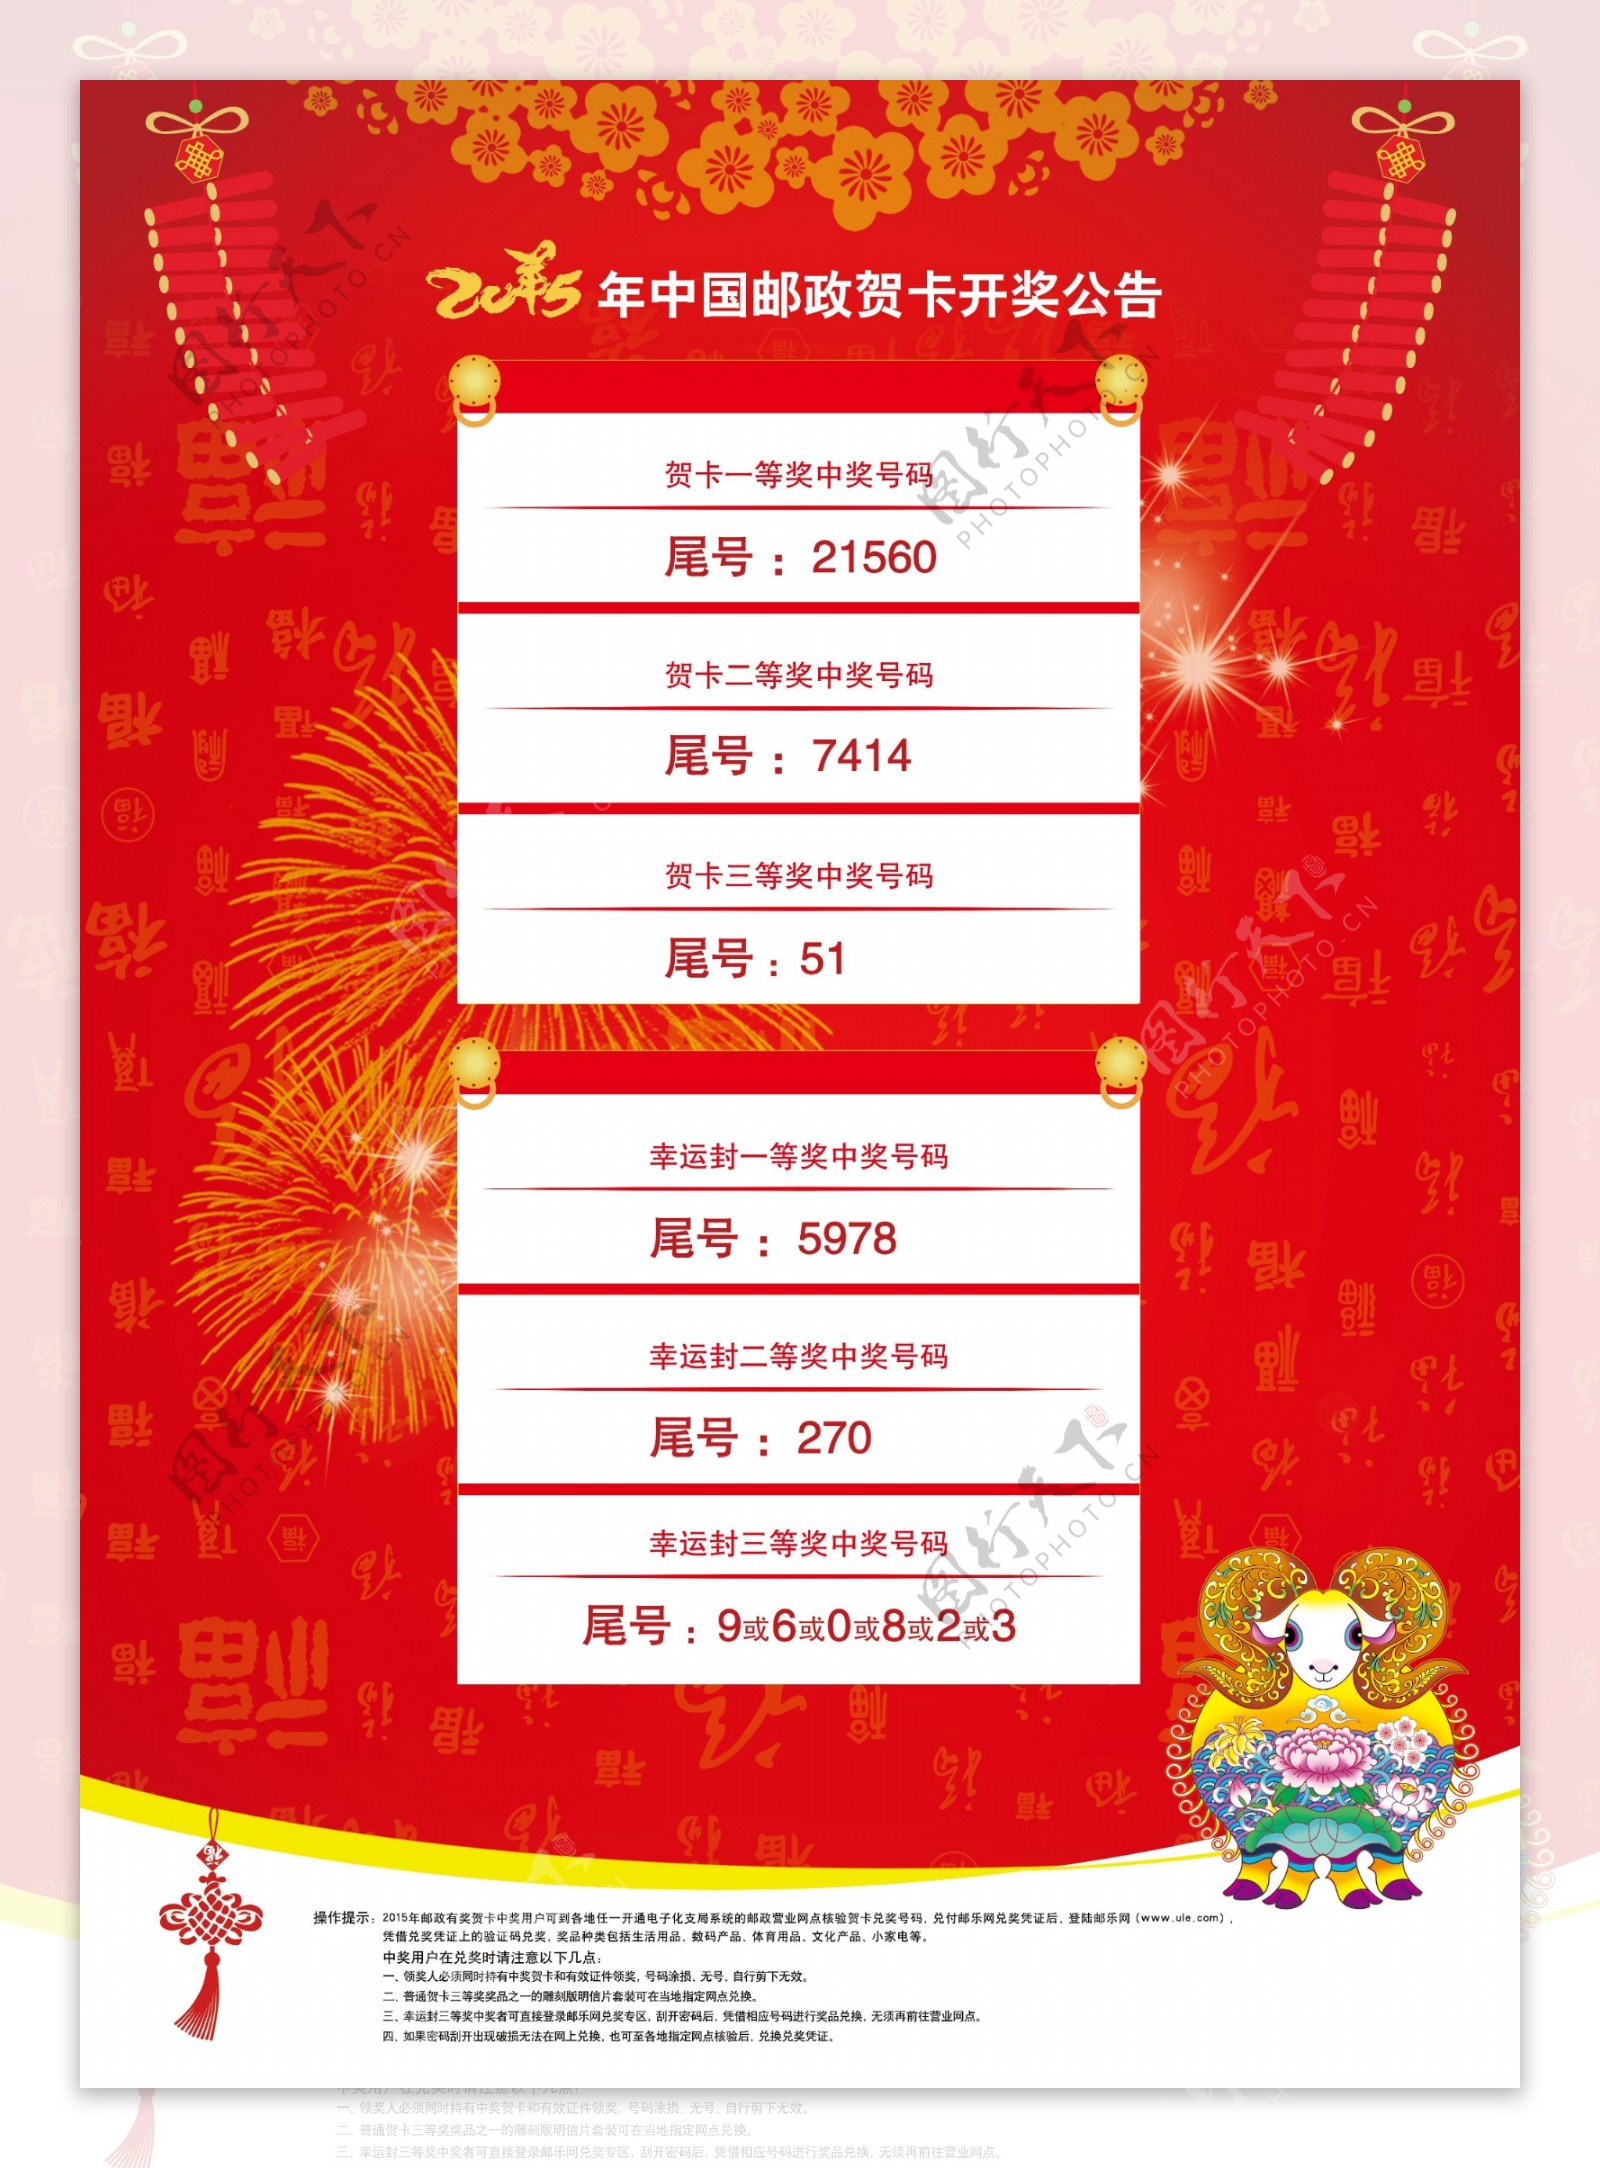 2015中国邮政贺卡开奖公告